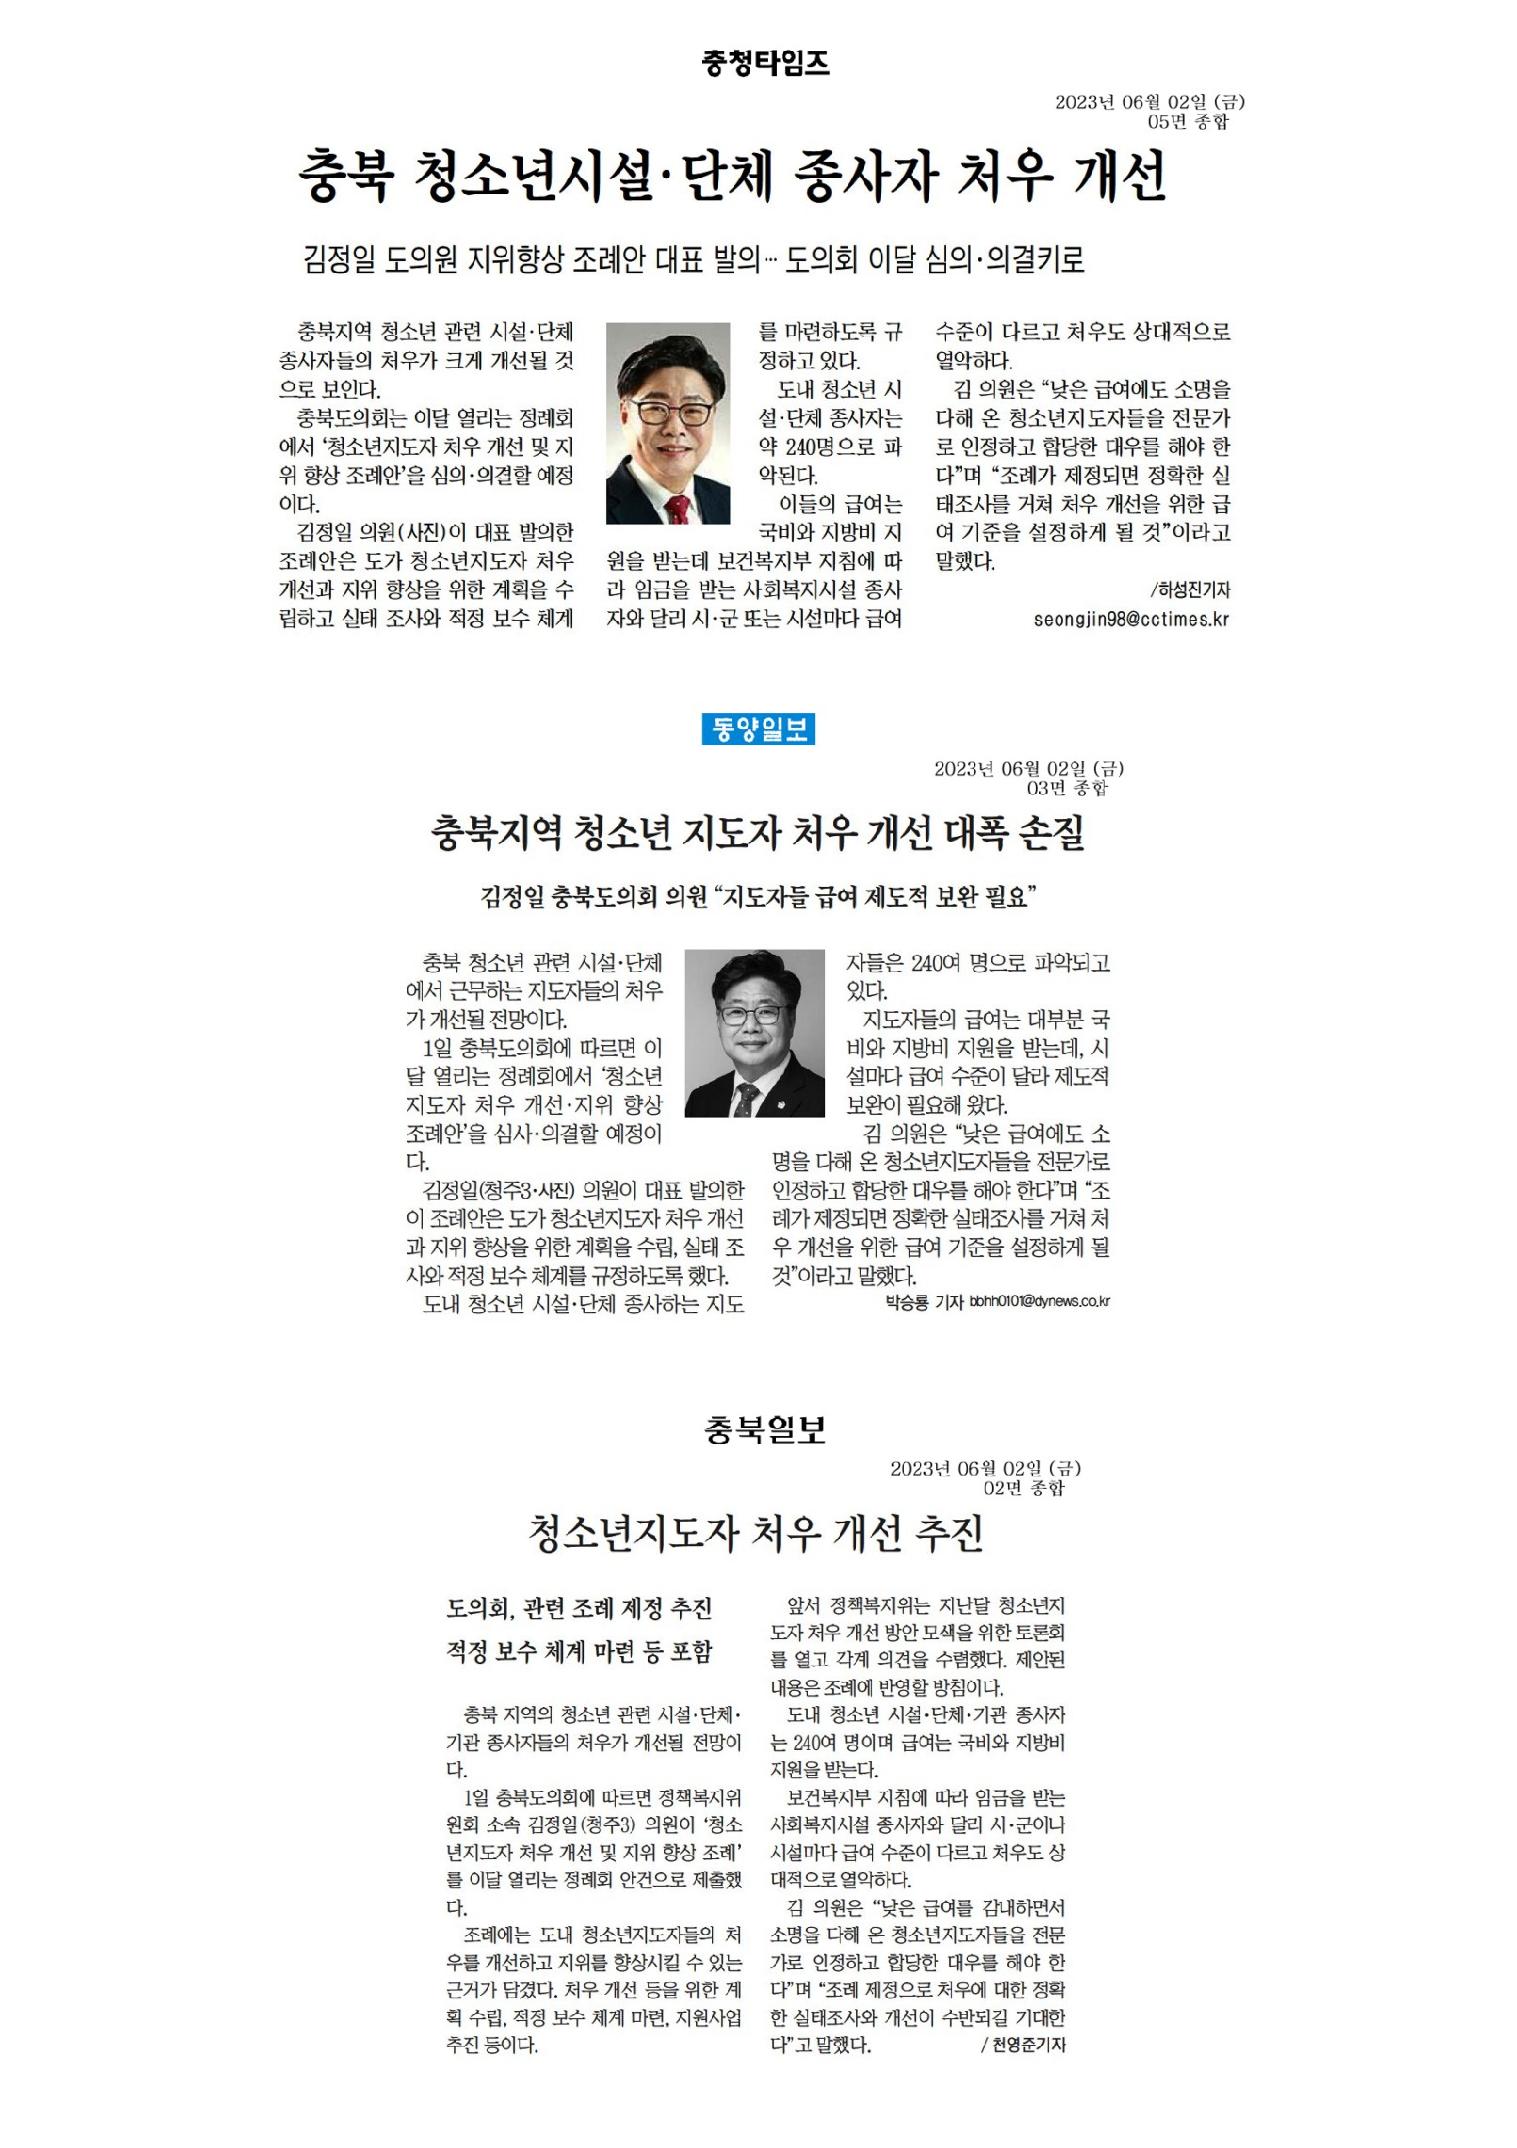 김정일 의원, 청소년지도자 처우 개선 추진 - 1